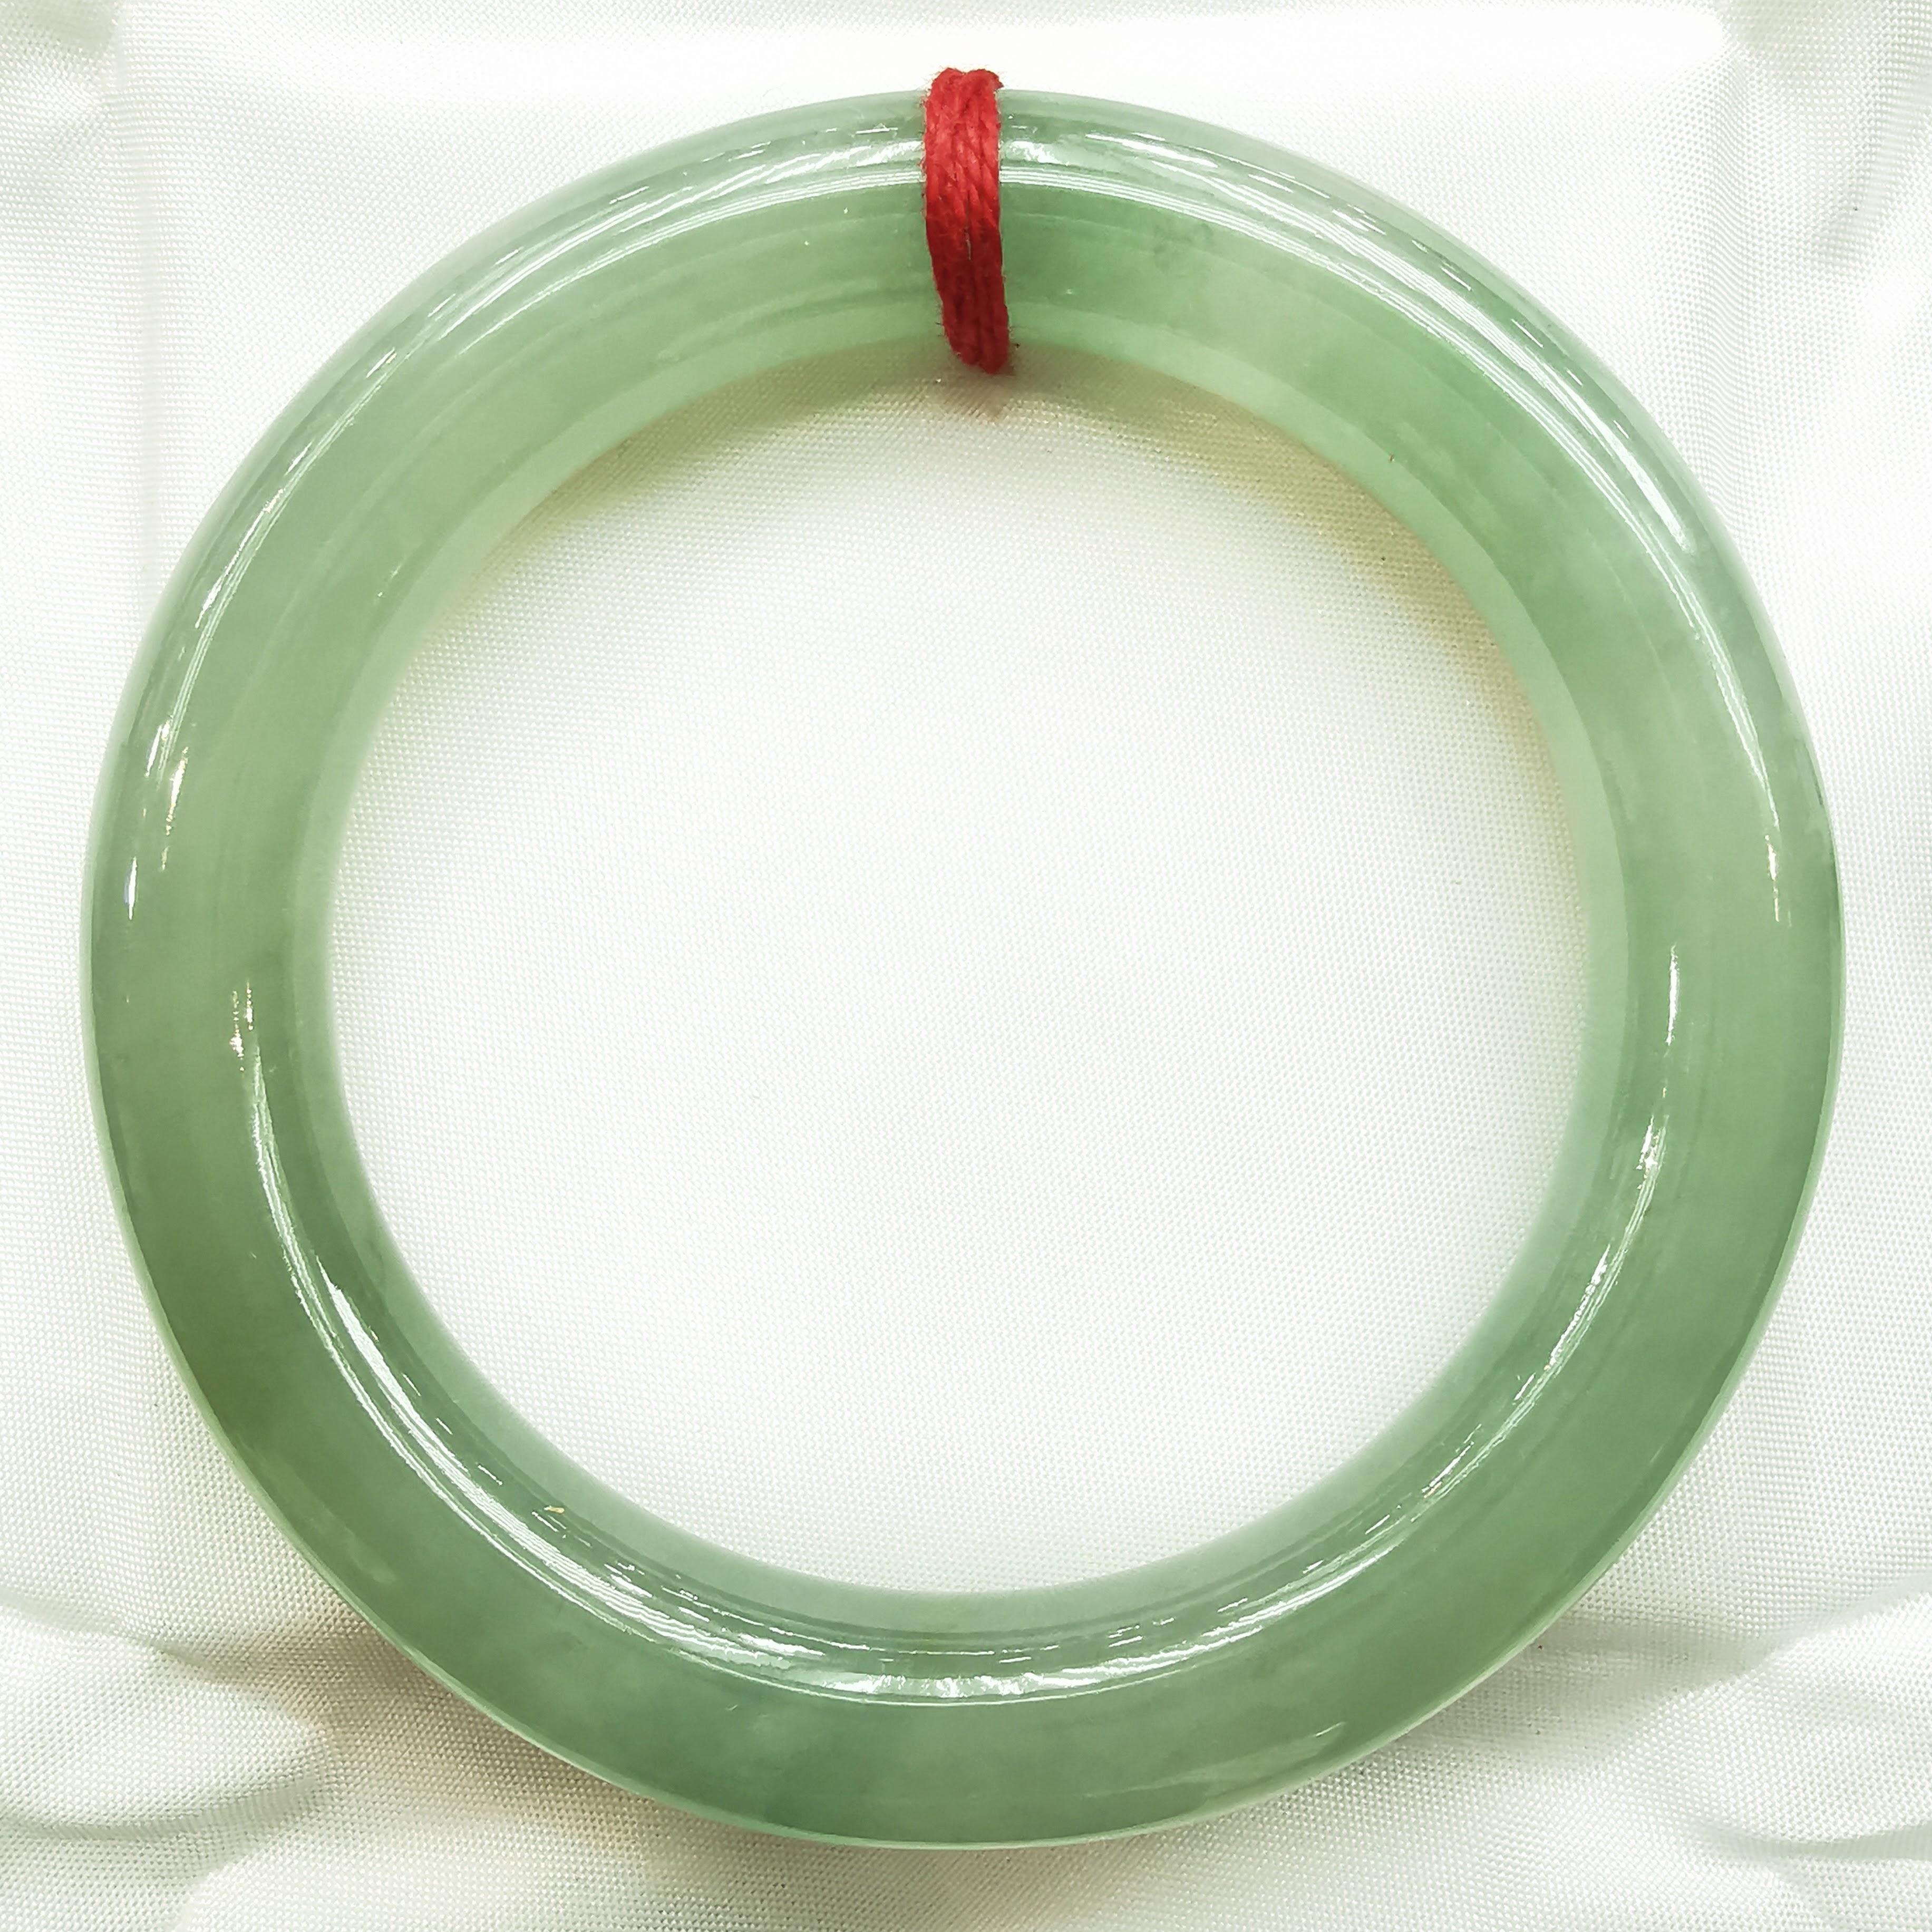 Unser echter burmesischer Armreif aus hellgrüner, dicker Jade ist ein atemberaubendes Stück, das natürliche Schönheit und Eleganz ausstrahlt. Dieser exquisite Armreif ist aus echter burmesischer Jade gefertigt, die für ihre außergewöhnliche Qualität